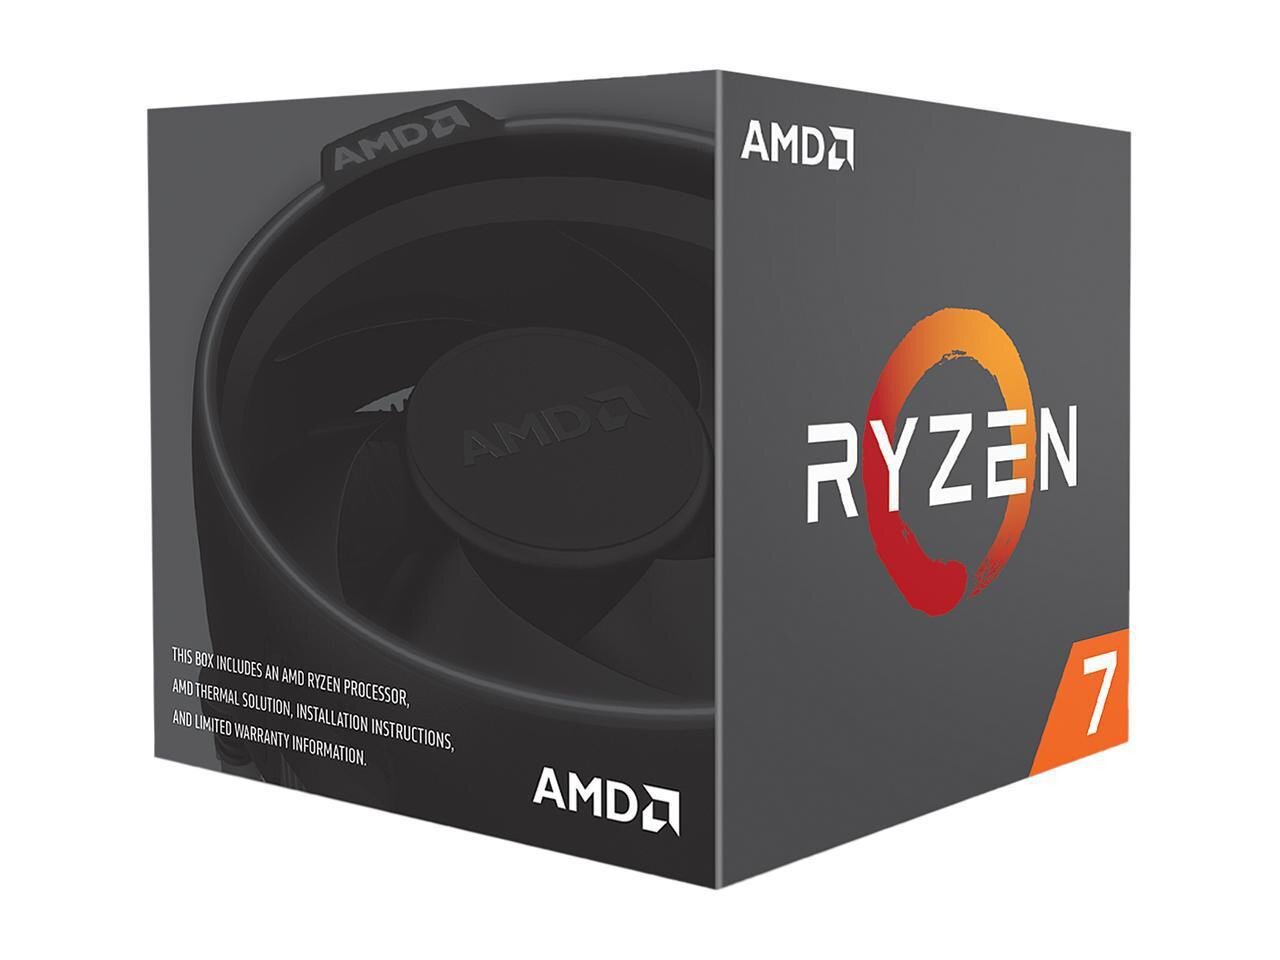 Buy AMD Ryzen 7 2700 Processor online in Pakistan - Tejar.pk